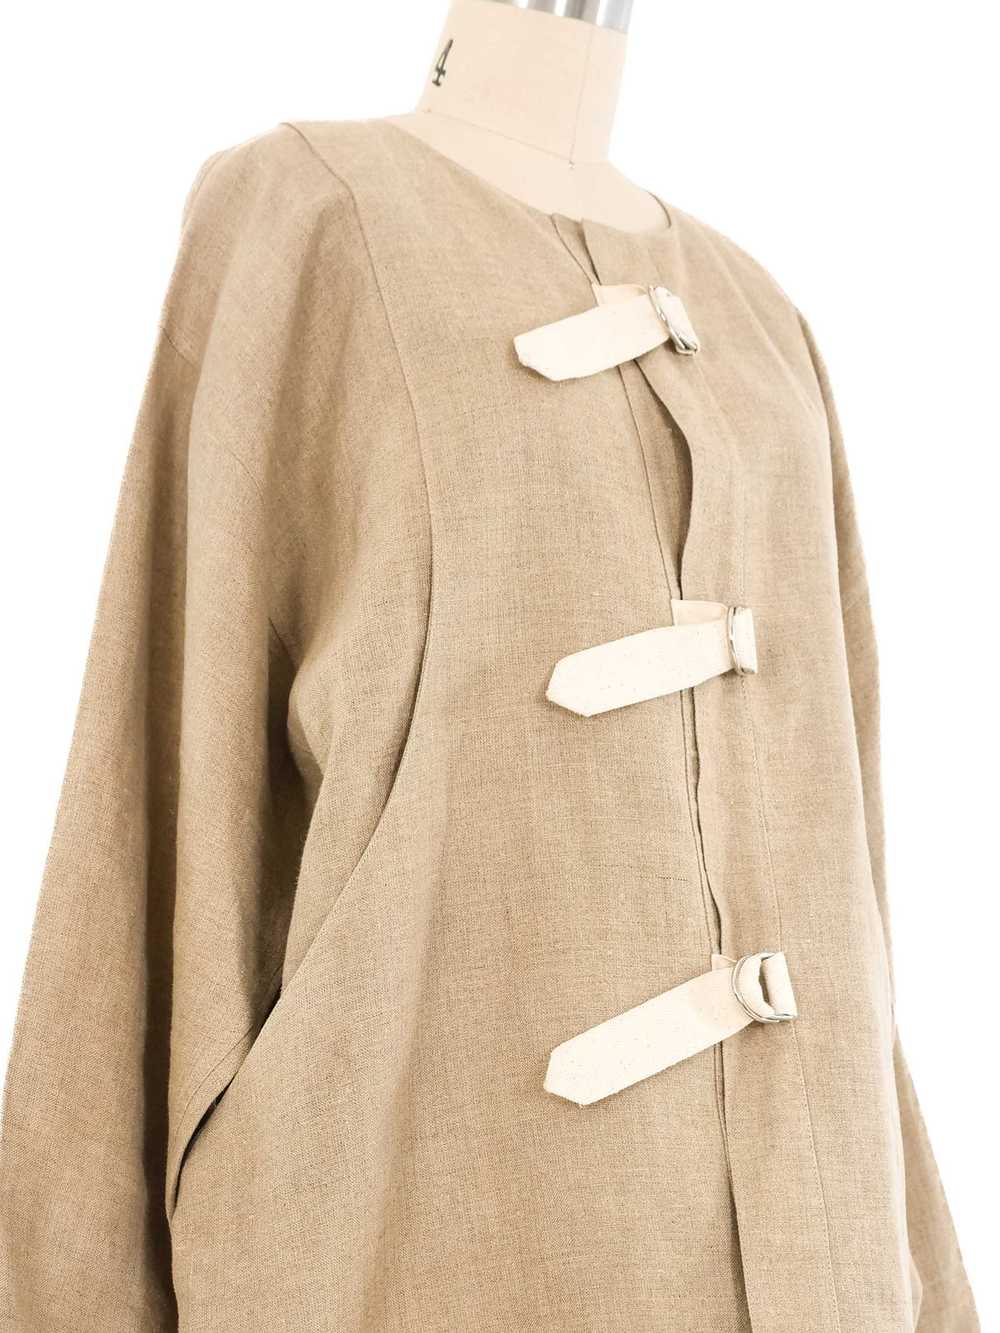 Castelbajac Belted Linen Jacket - image 2